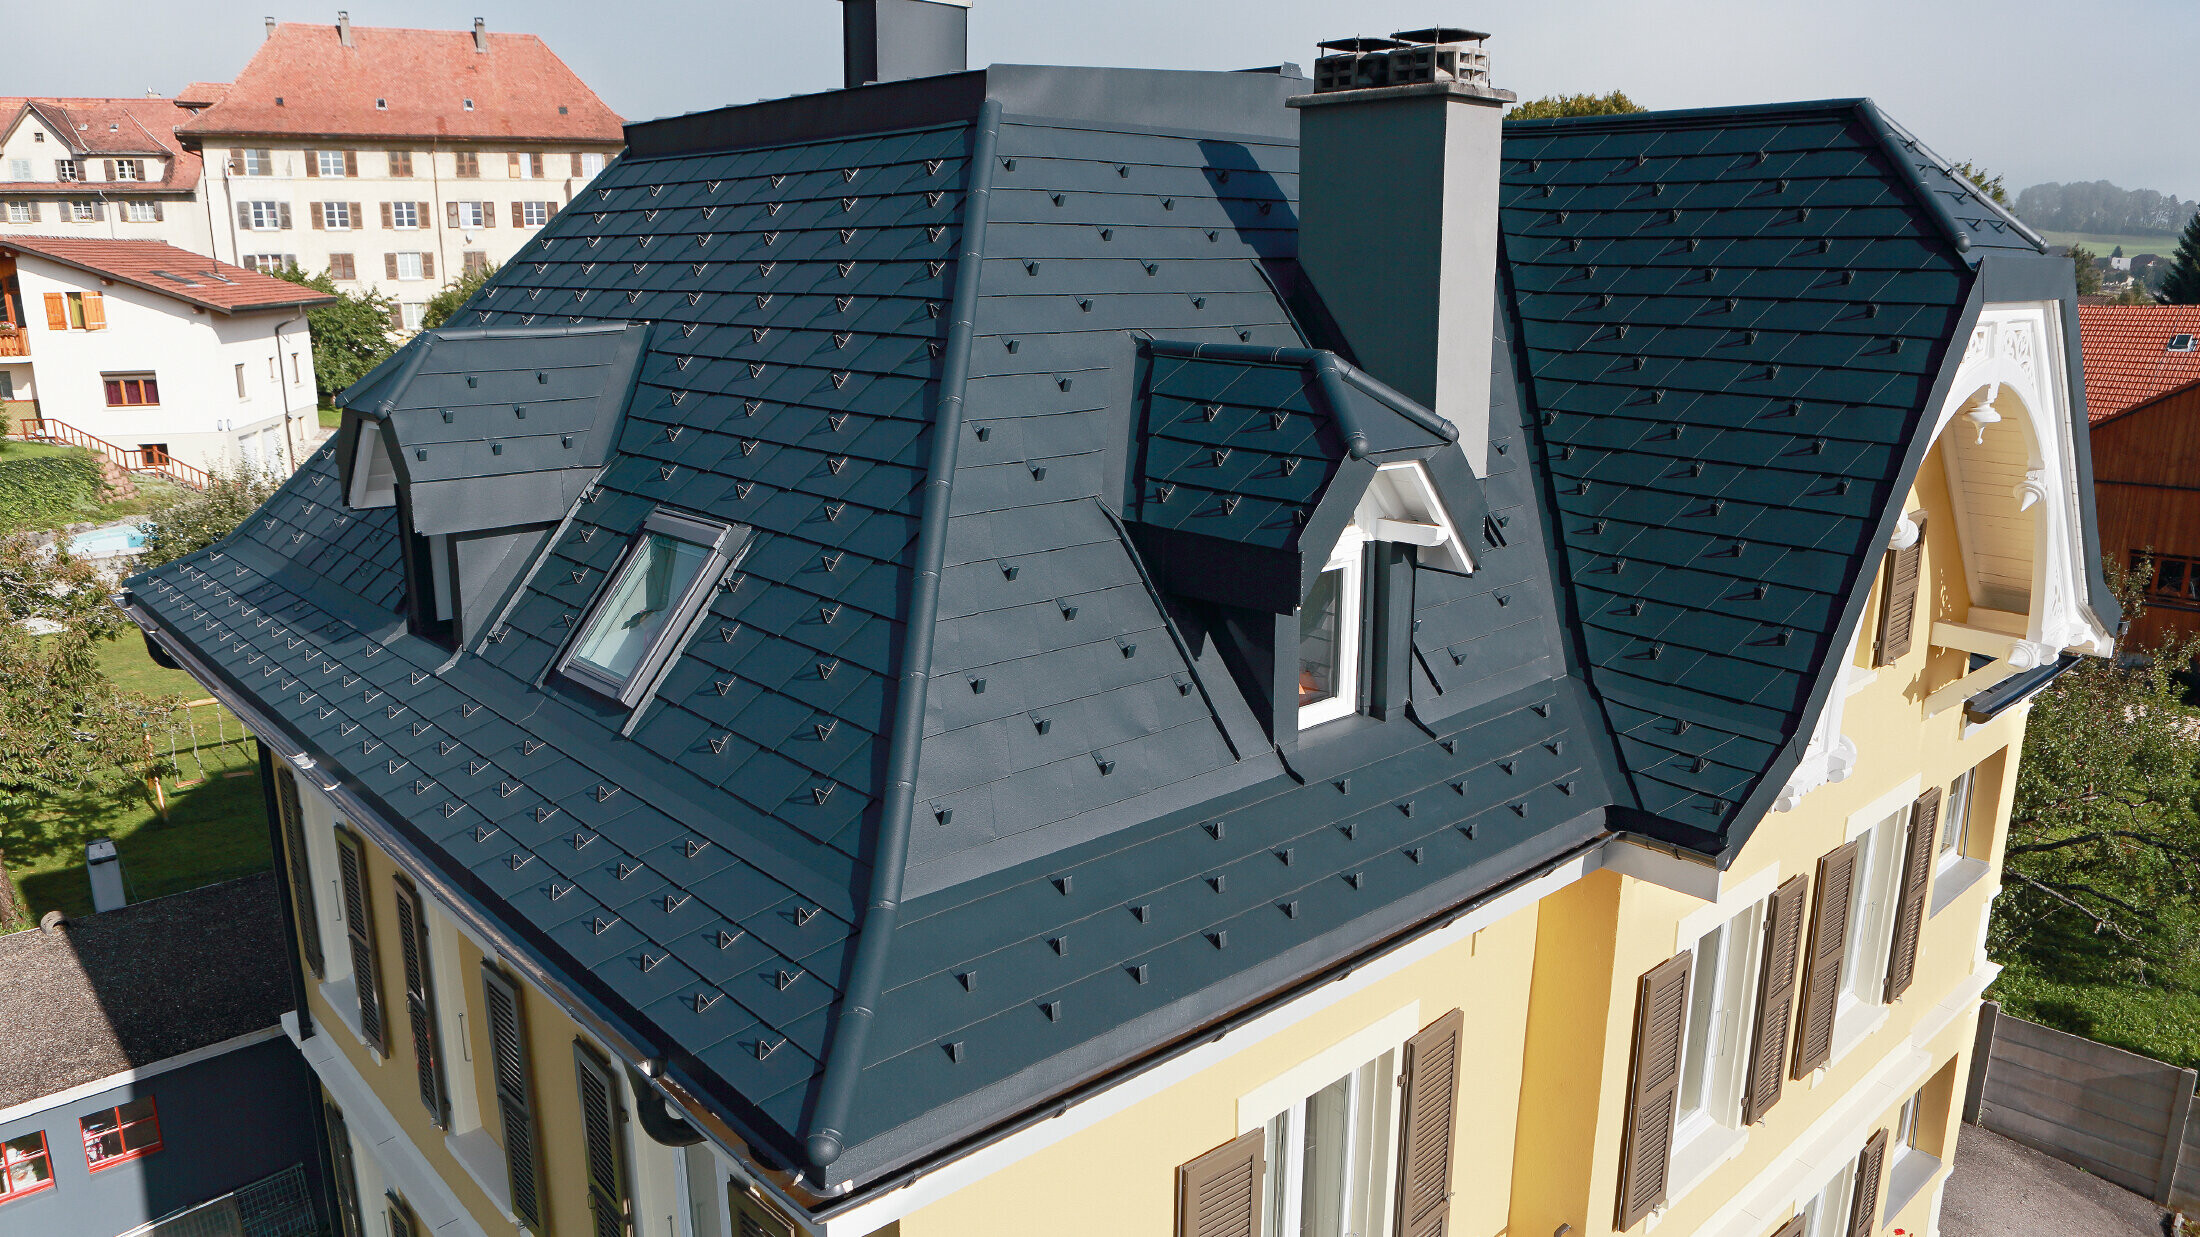 Willa w Szwajcarii, dach z licznymi koszami i małymi lukarnami, dach jest pokryty aluminiową dachówką łupkową PREFA w kolorze P.10 antracyt.